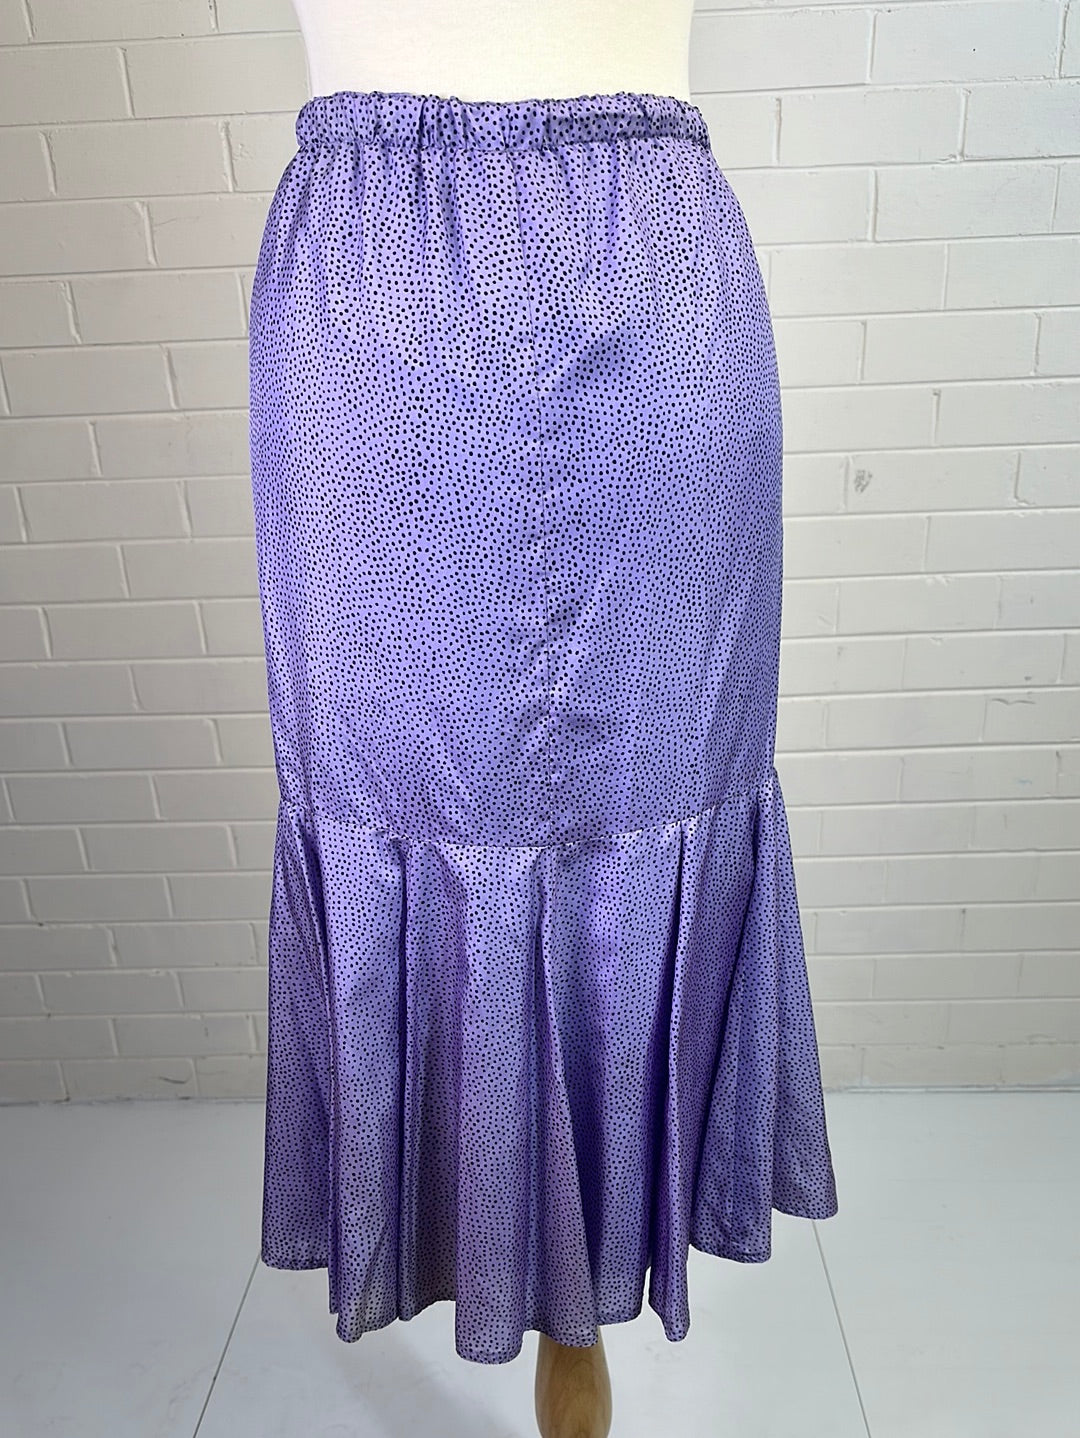 Robin Ross | vintage 80's | skirt |size 12 | midi length | 100% silk